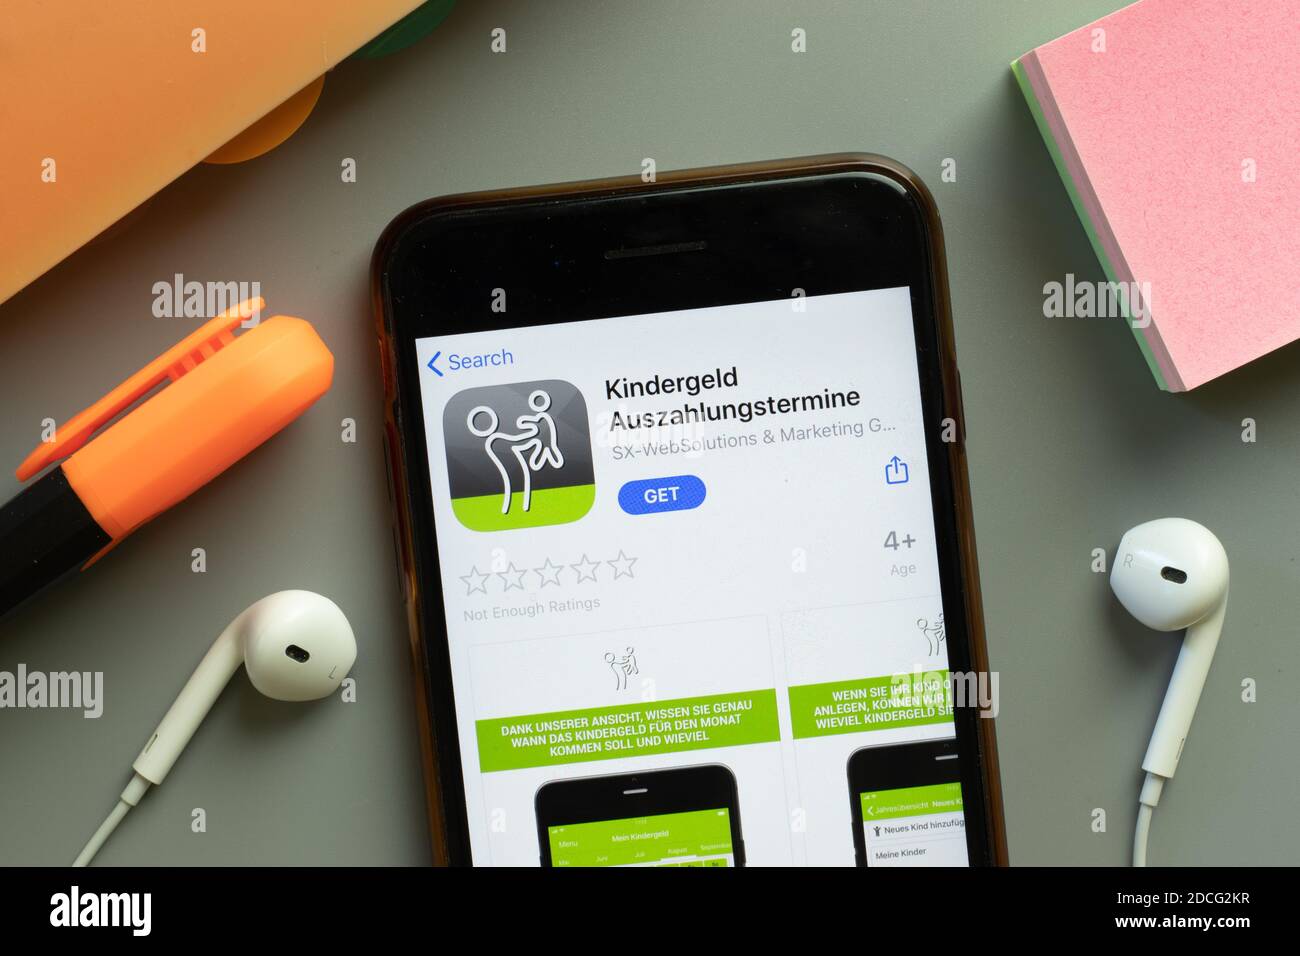 New York, Stati Uniti - 7 novembre 2020: Kindergeld Auszahlungstermine app store logo sullo schermo del telefono, editoriale illustrativo. Foto Stock